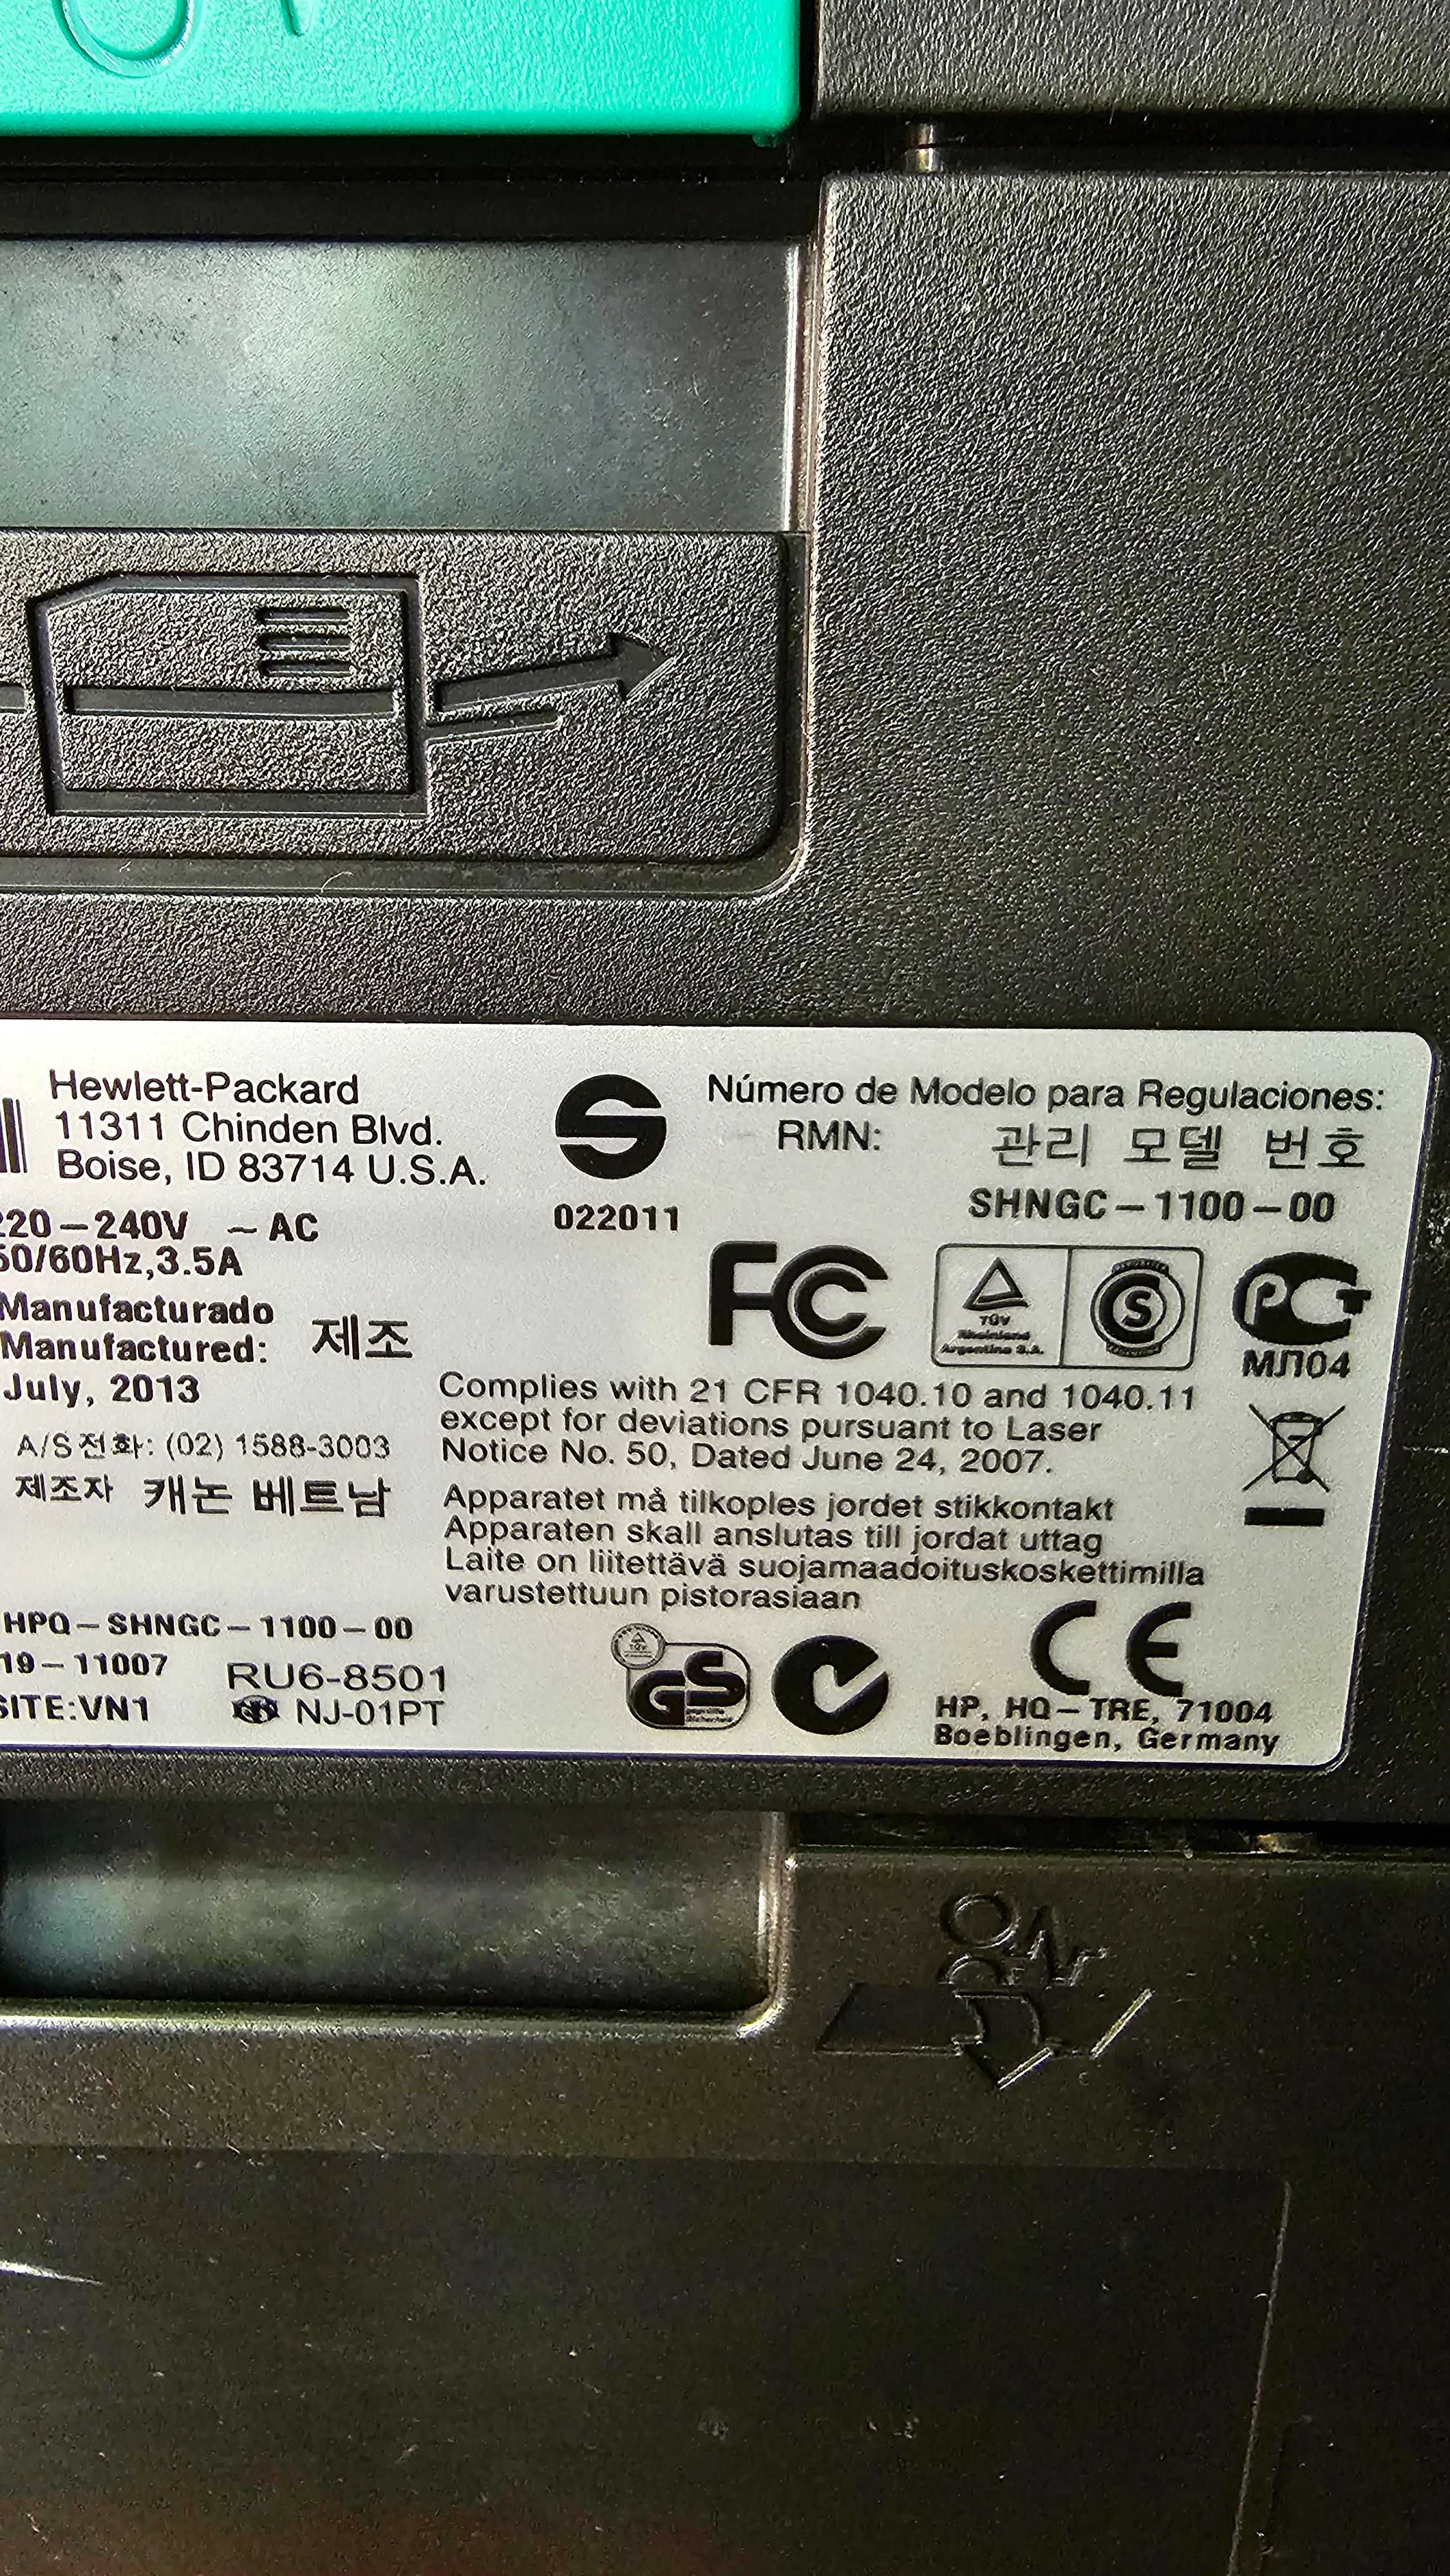 HP LaserJet Pro 400 M401dn Принтер лазерный  С двухсторонней печатью